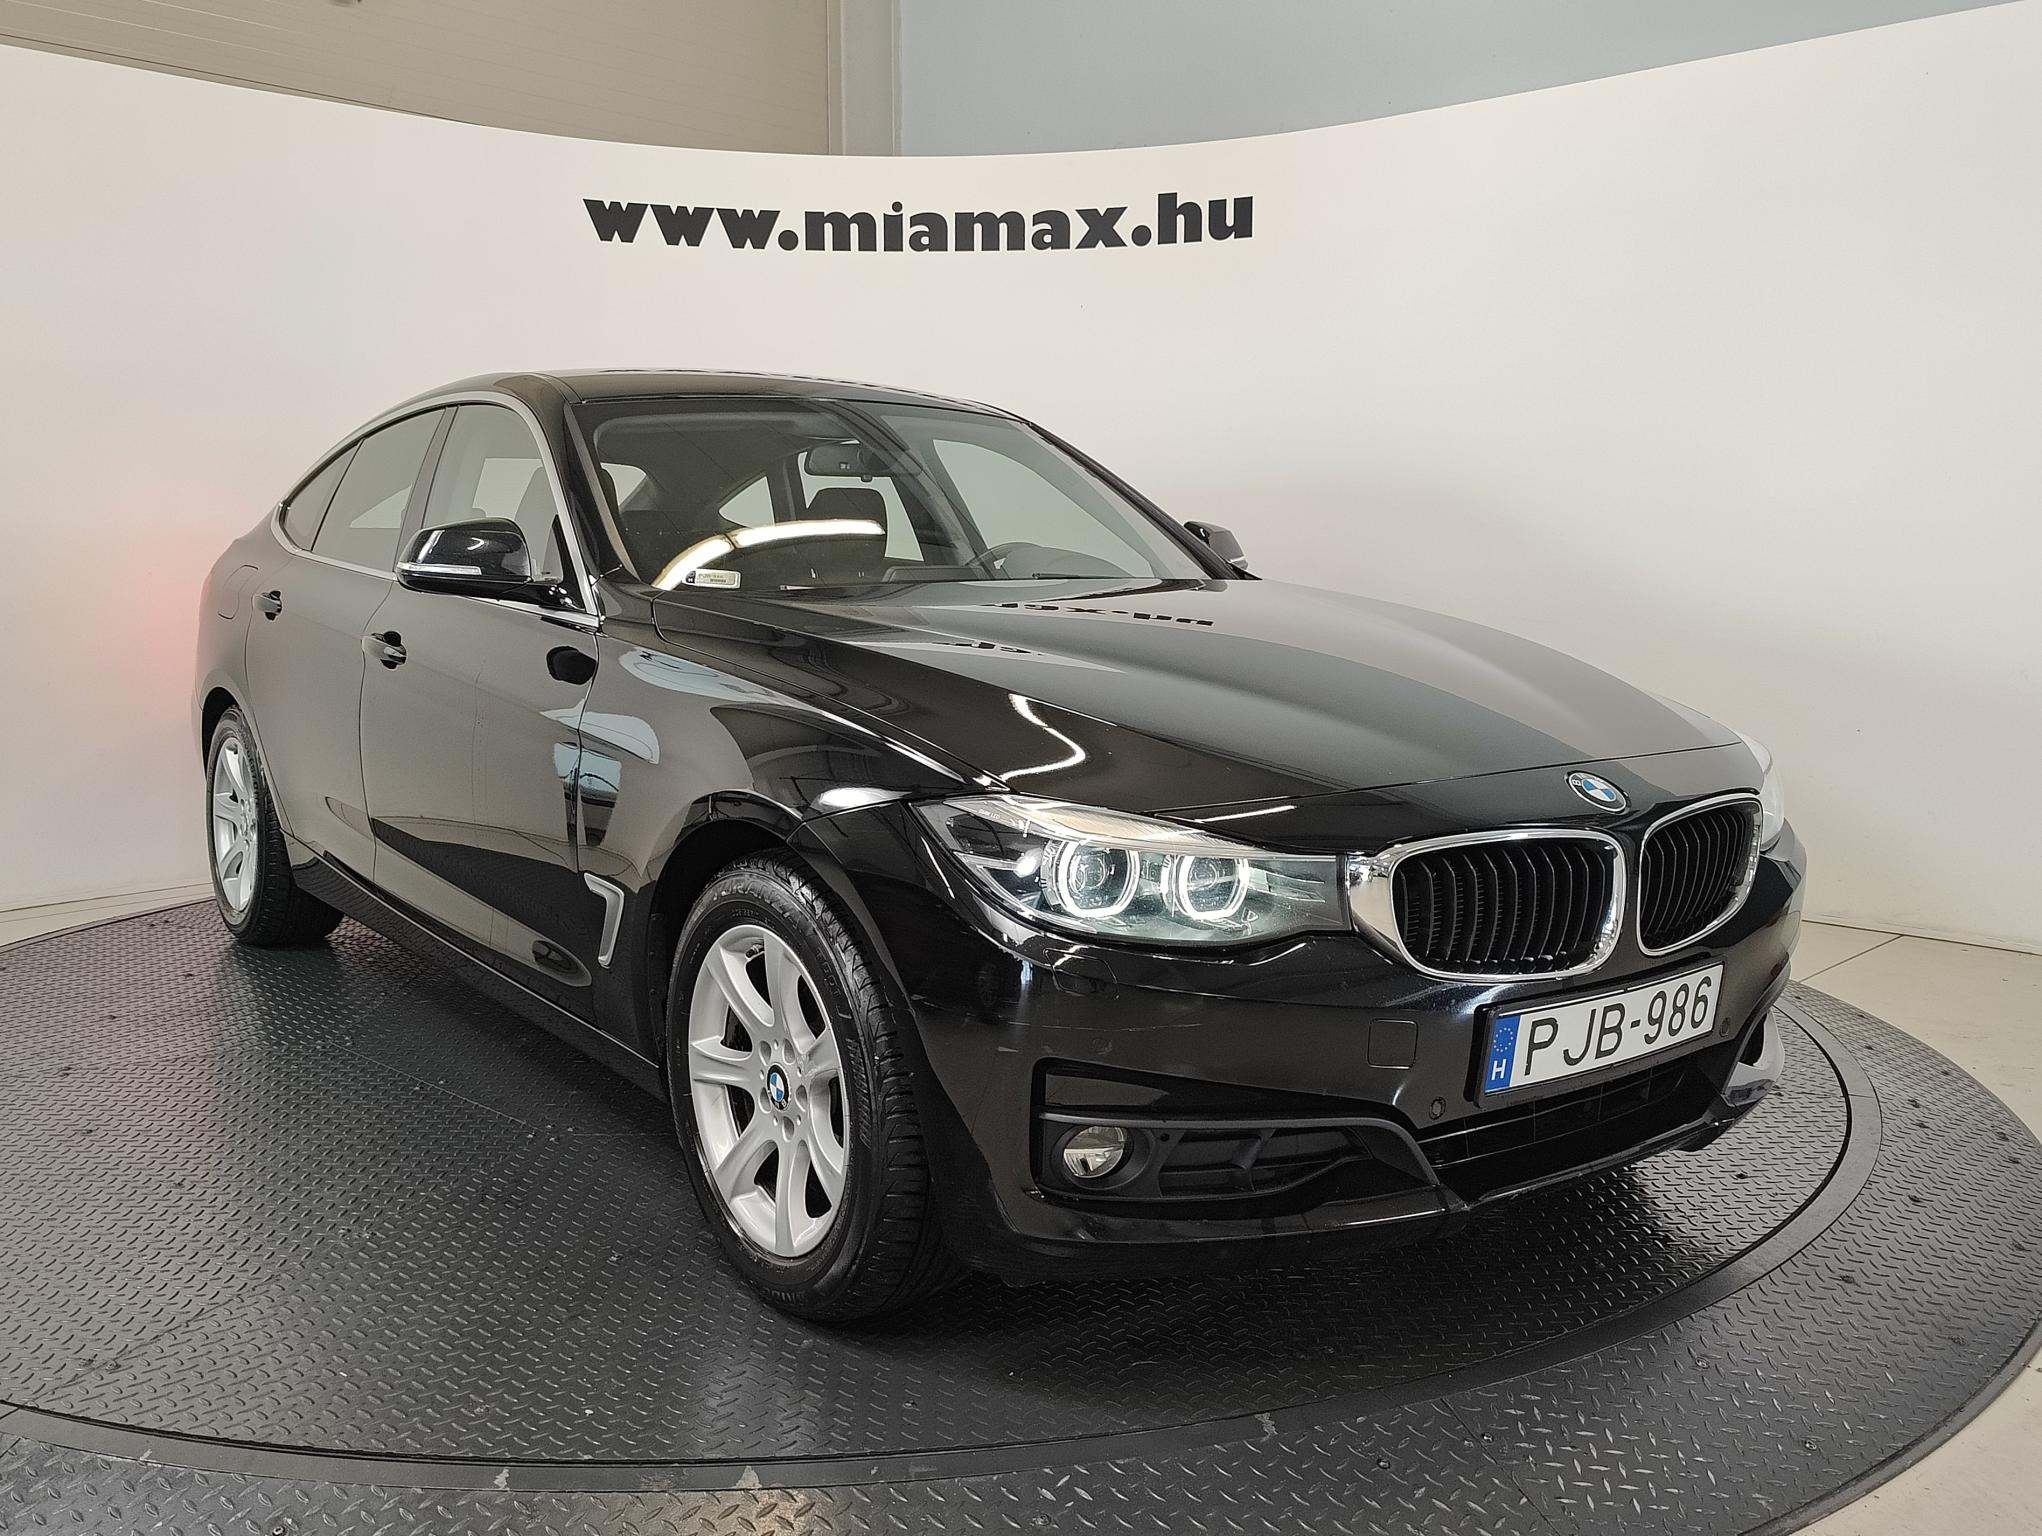 BMW 318d Advantage 149.979 km! LED GranTurismo magyar. 1 tulajdonos. vezetett szervizkönyves. ÁFA-s